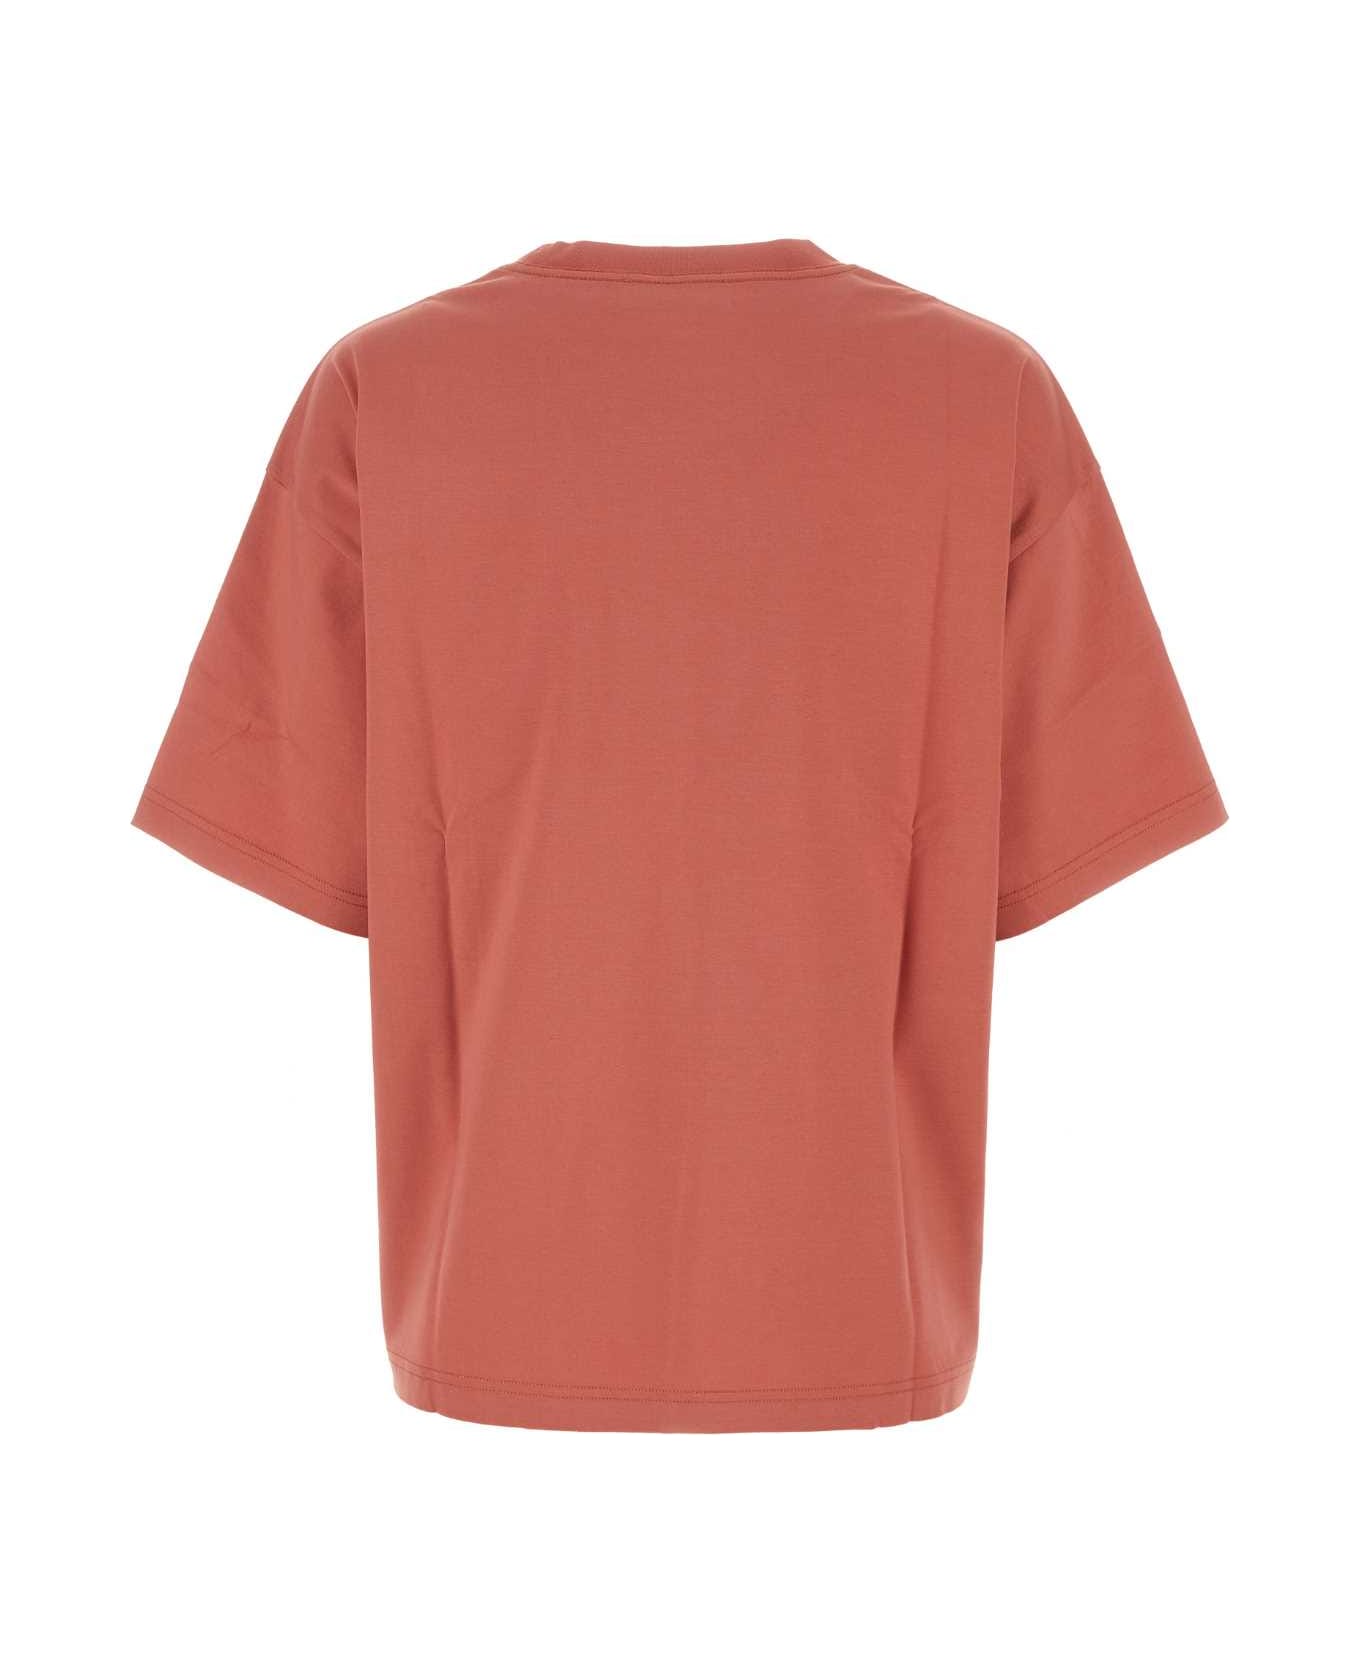 Lanvin Antiqued Pink Cotton Oversize T-shirt - LITCHI Tシャツ